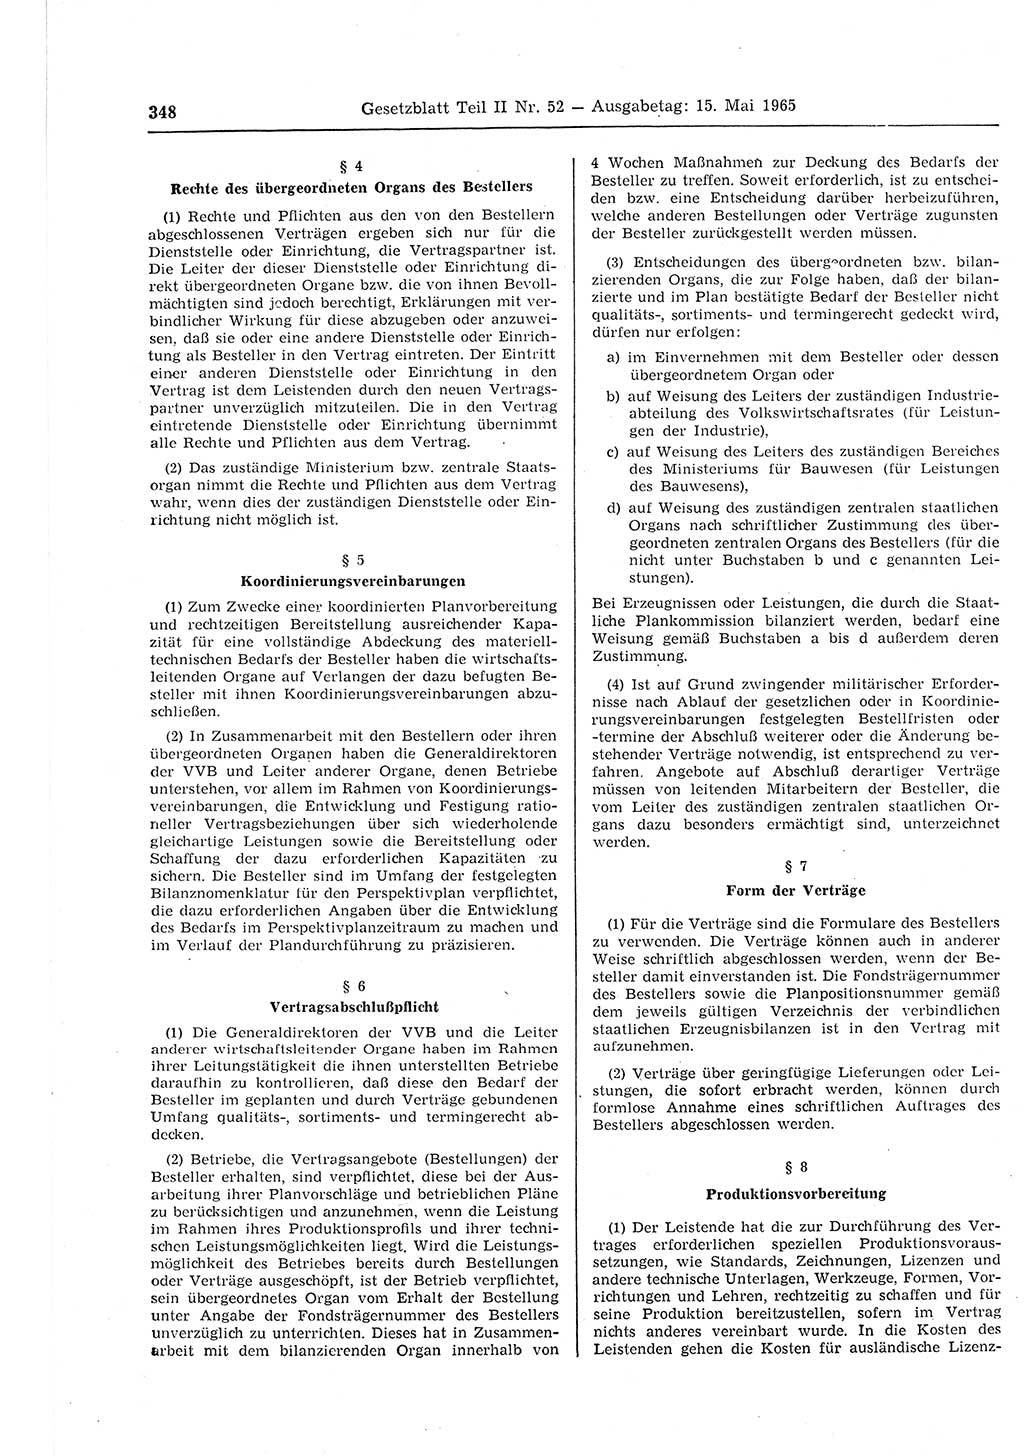 Gesetzblatt (GBl.) der Deutschen Demokratischen Republik (DDR) Teil ⅠⅠ 1965, Seite 348 (GBl. DDR ⅠⅠ 1965, S. 348)